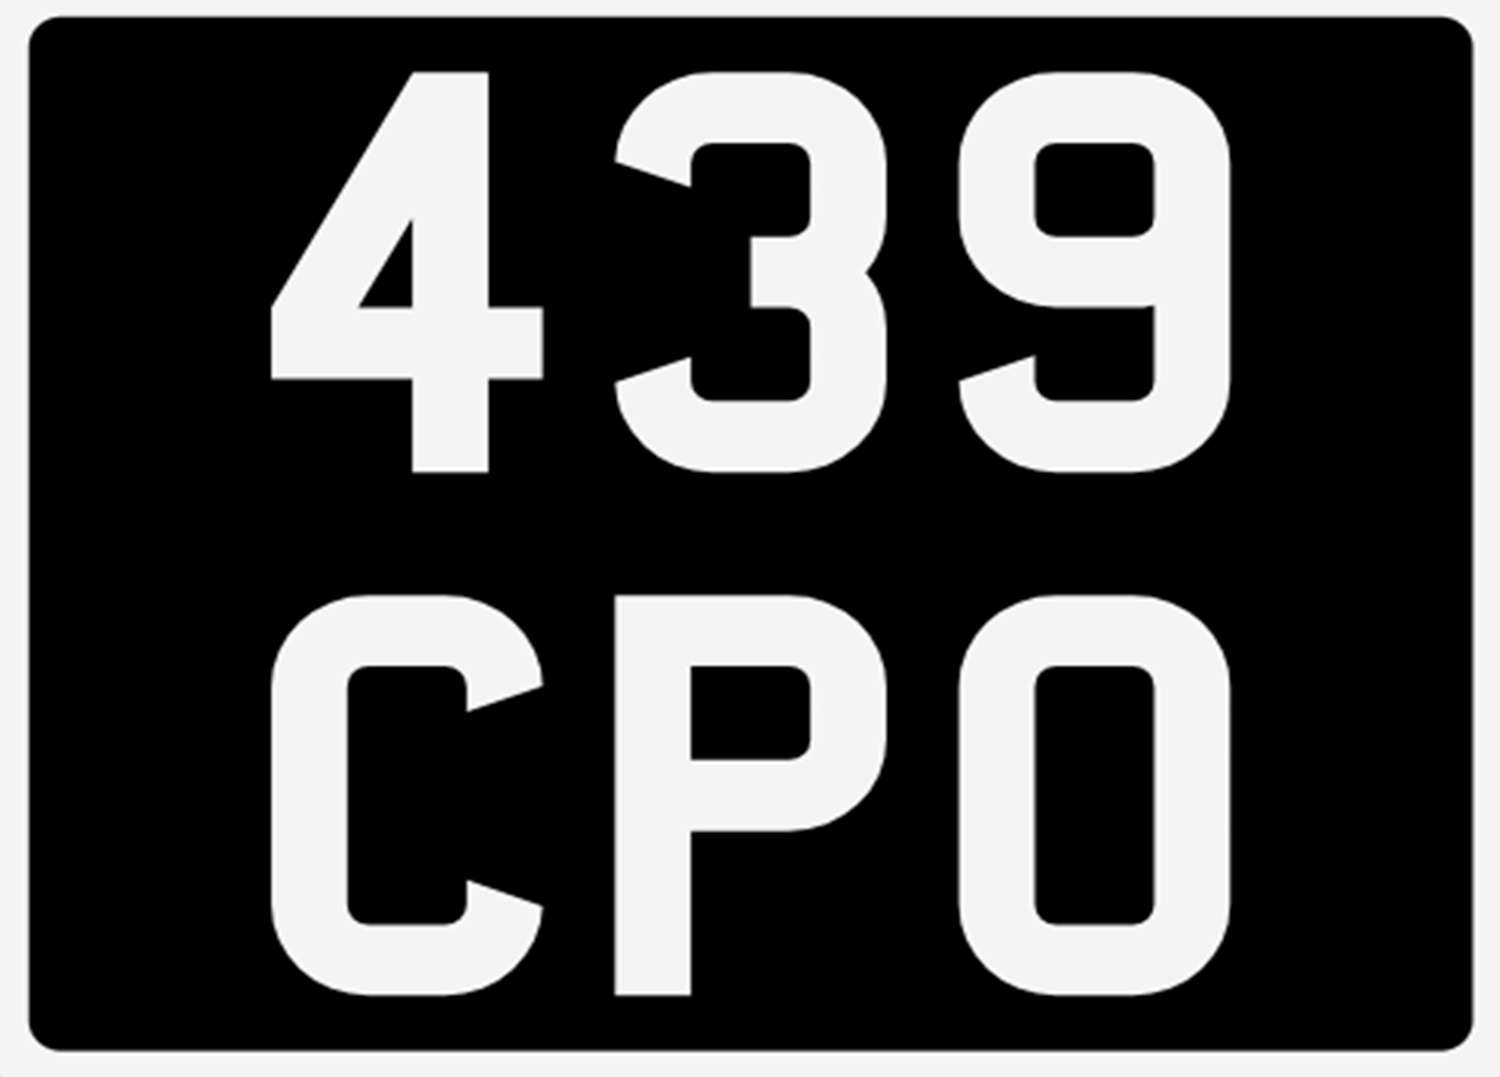 <p>&nbsp; 439 CPO Registration Number&nbsp;</p>